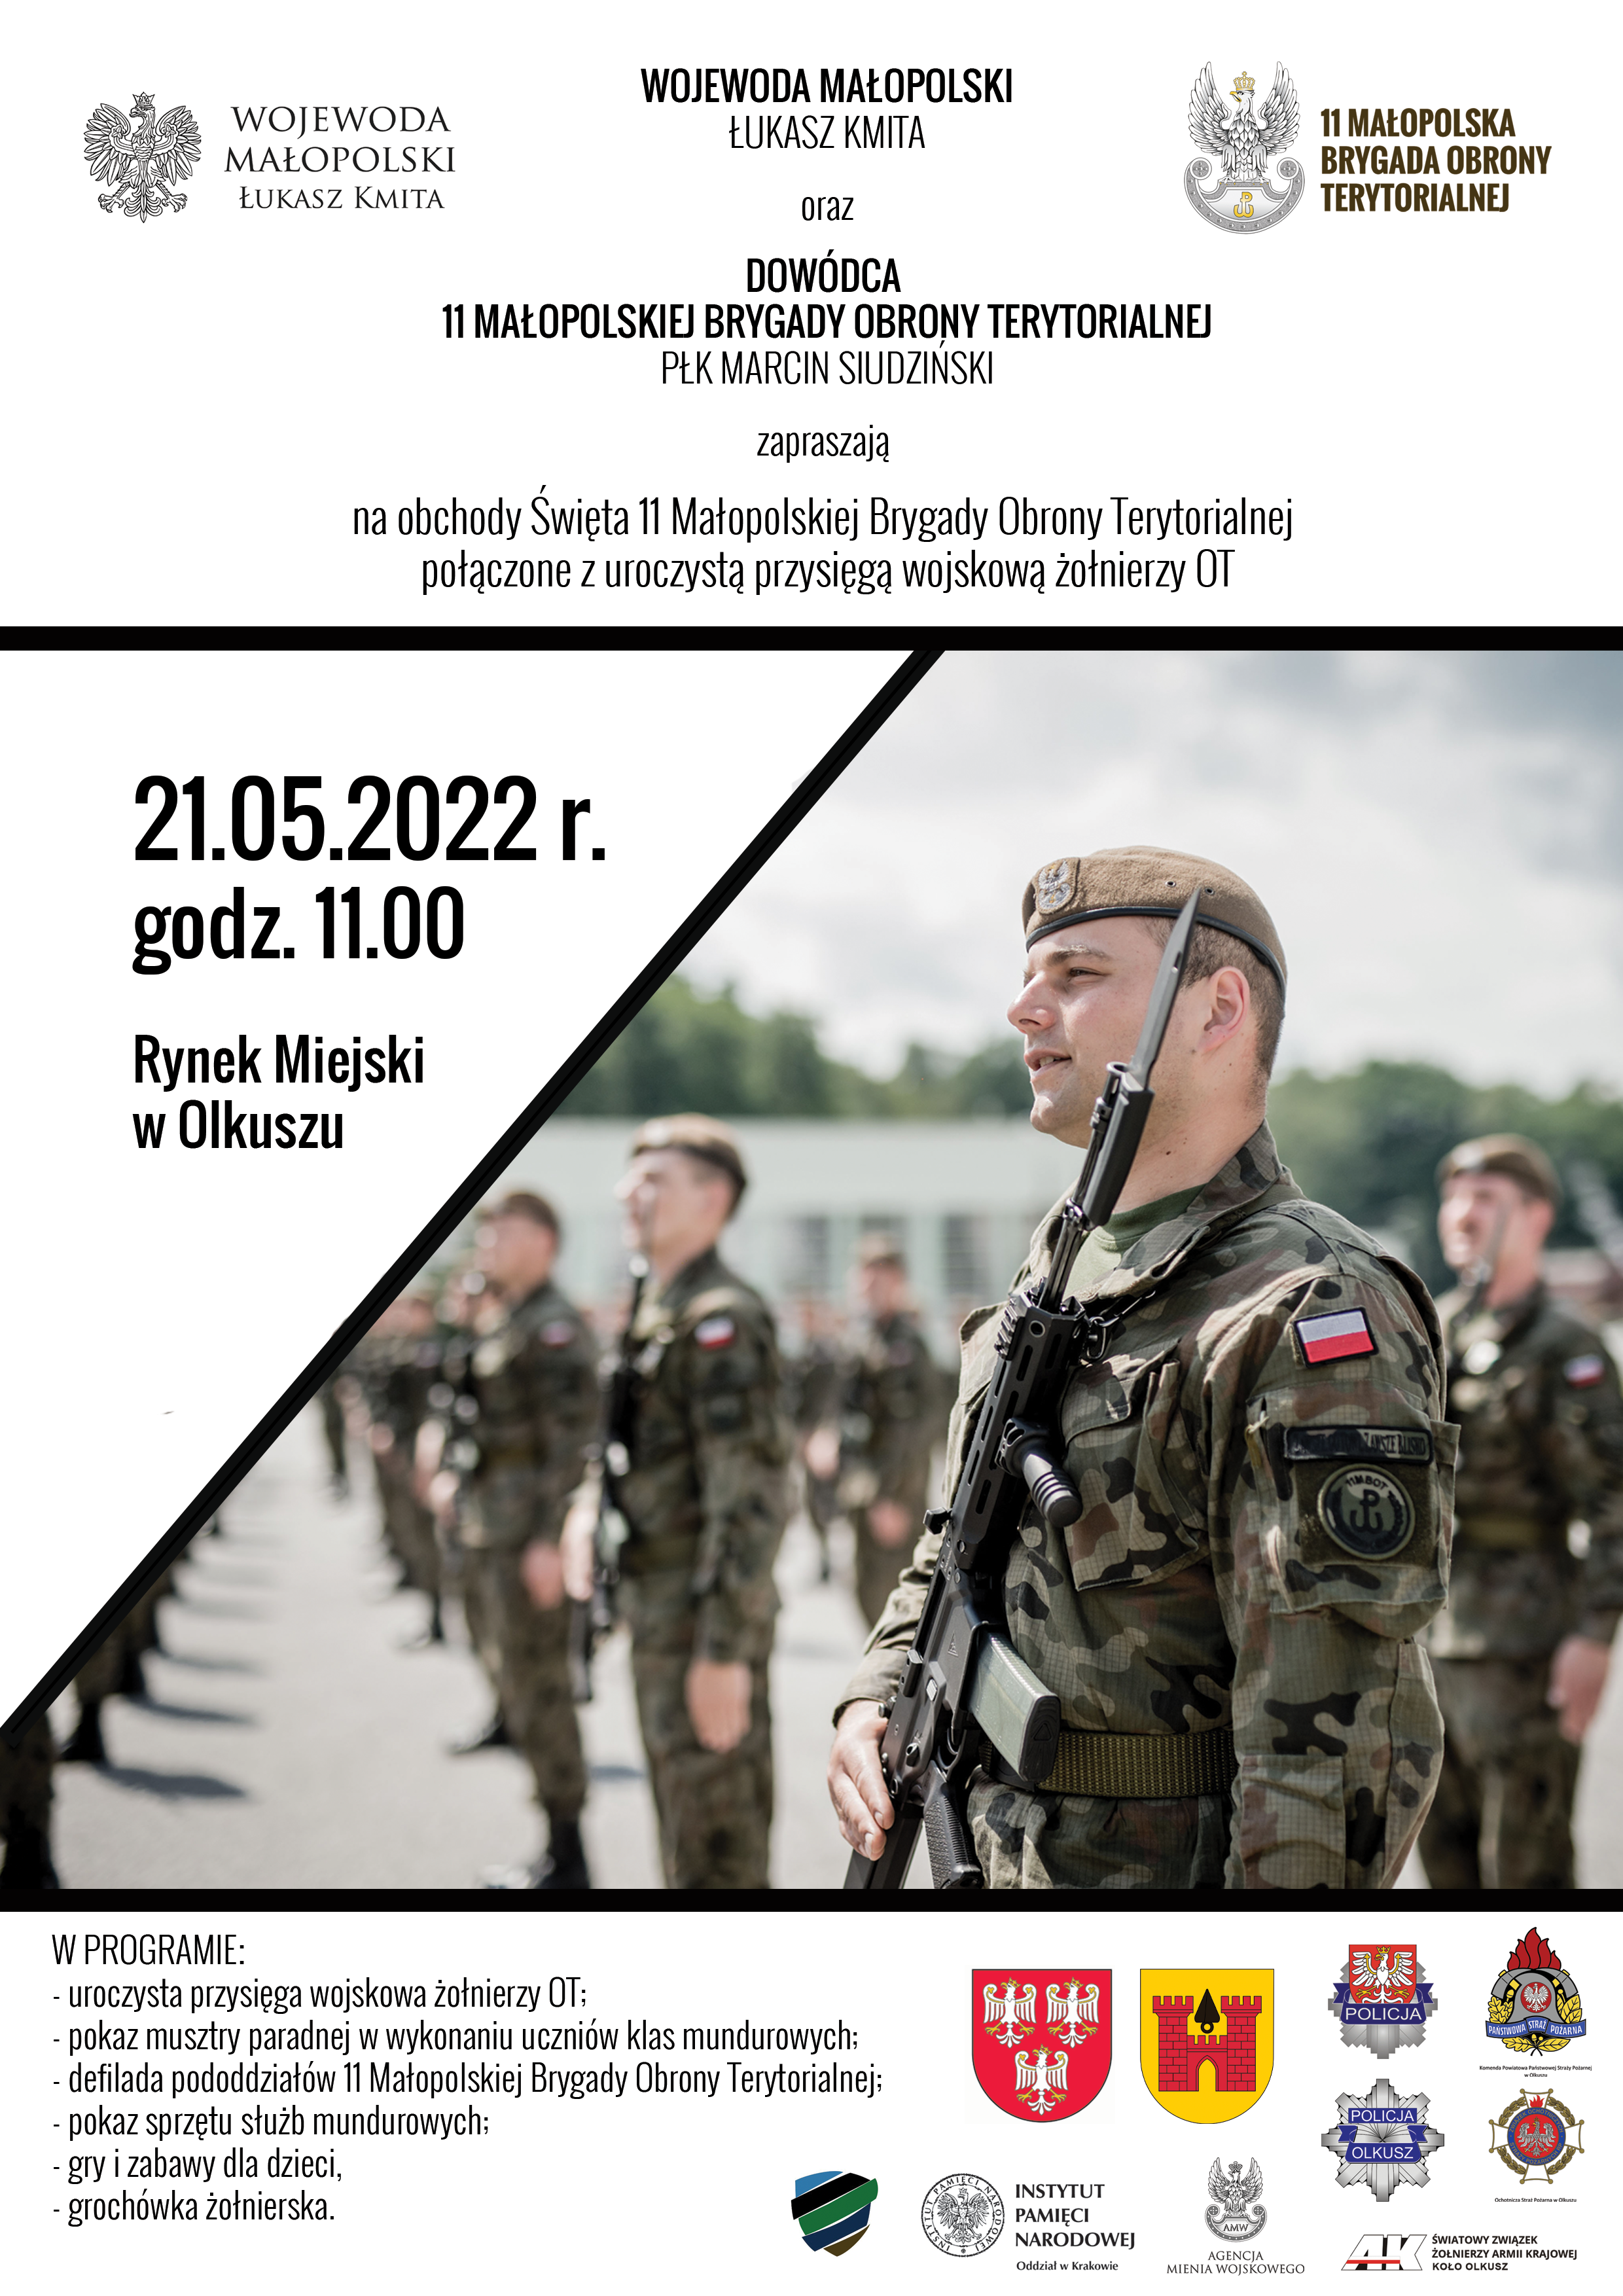 Plakat z zaproszeniem na obchody Święta 11 Małopolskiej Brygady Obrony Terytorialnej